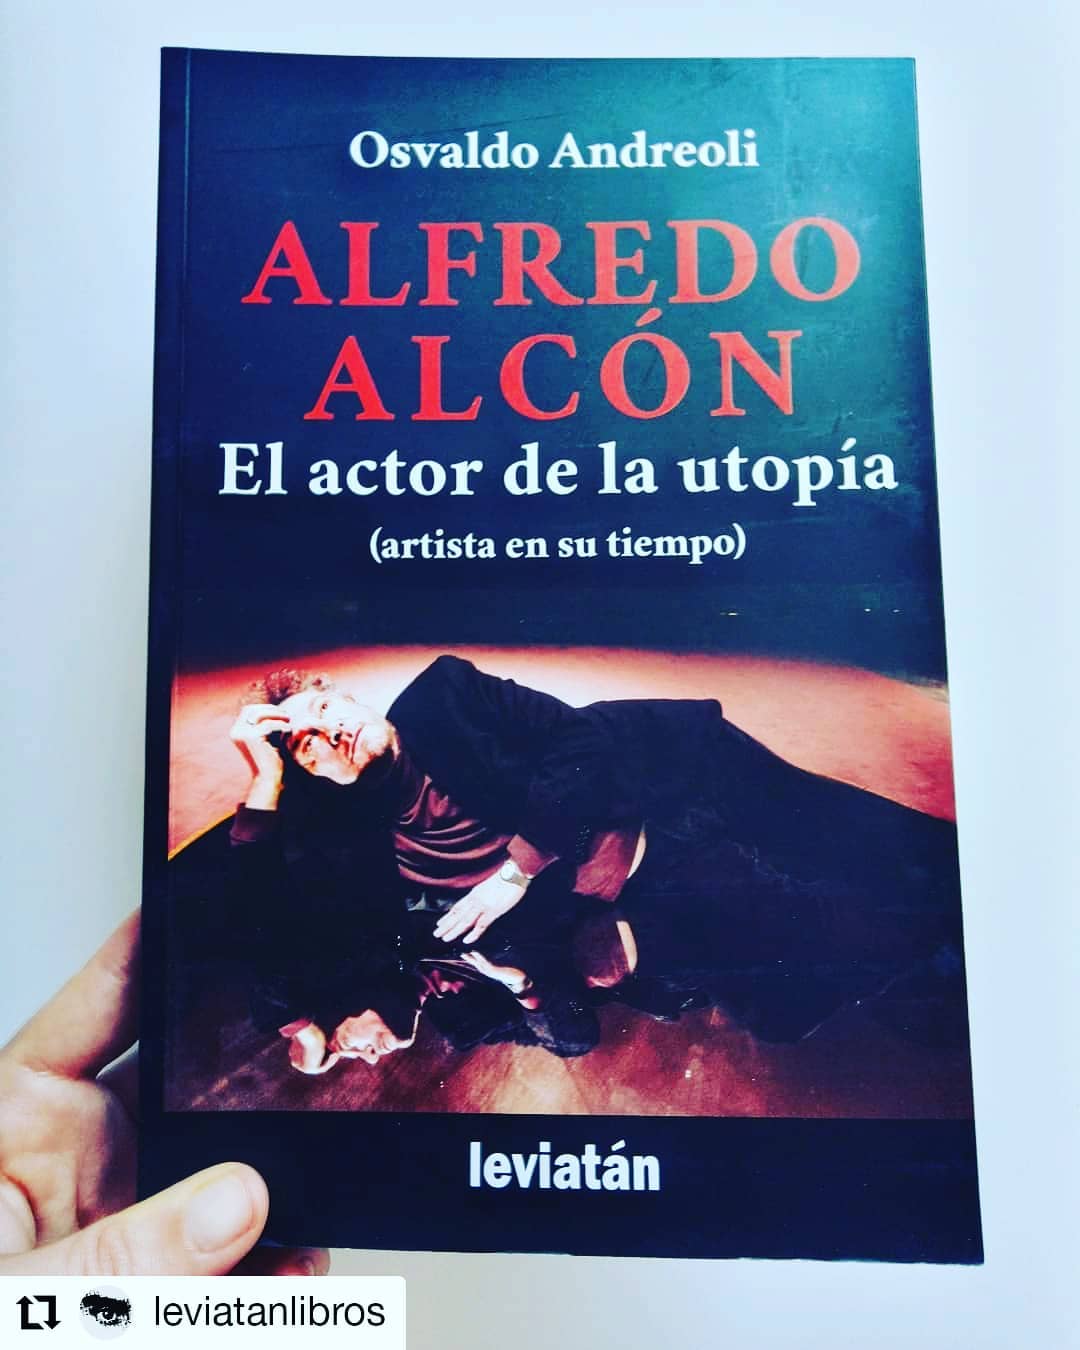 PRESENTAN UN LIBRO SOBRE ALFREDO ALCÓN